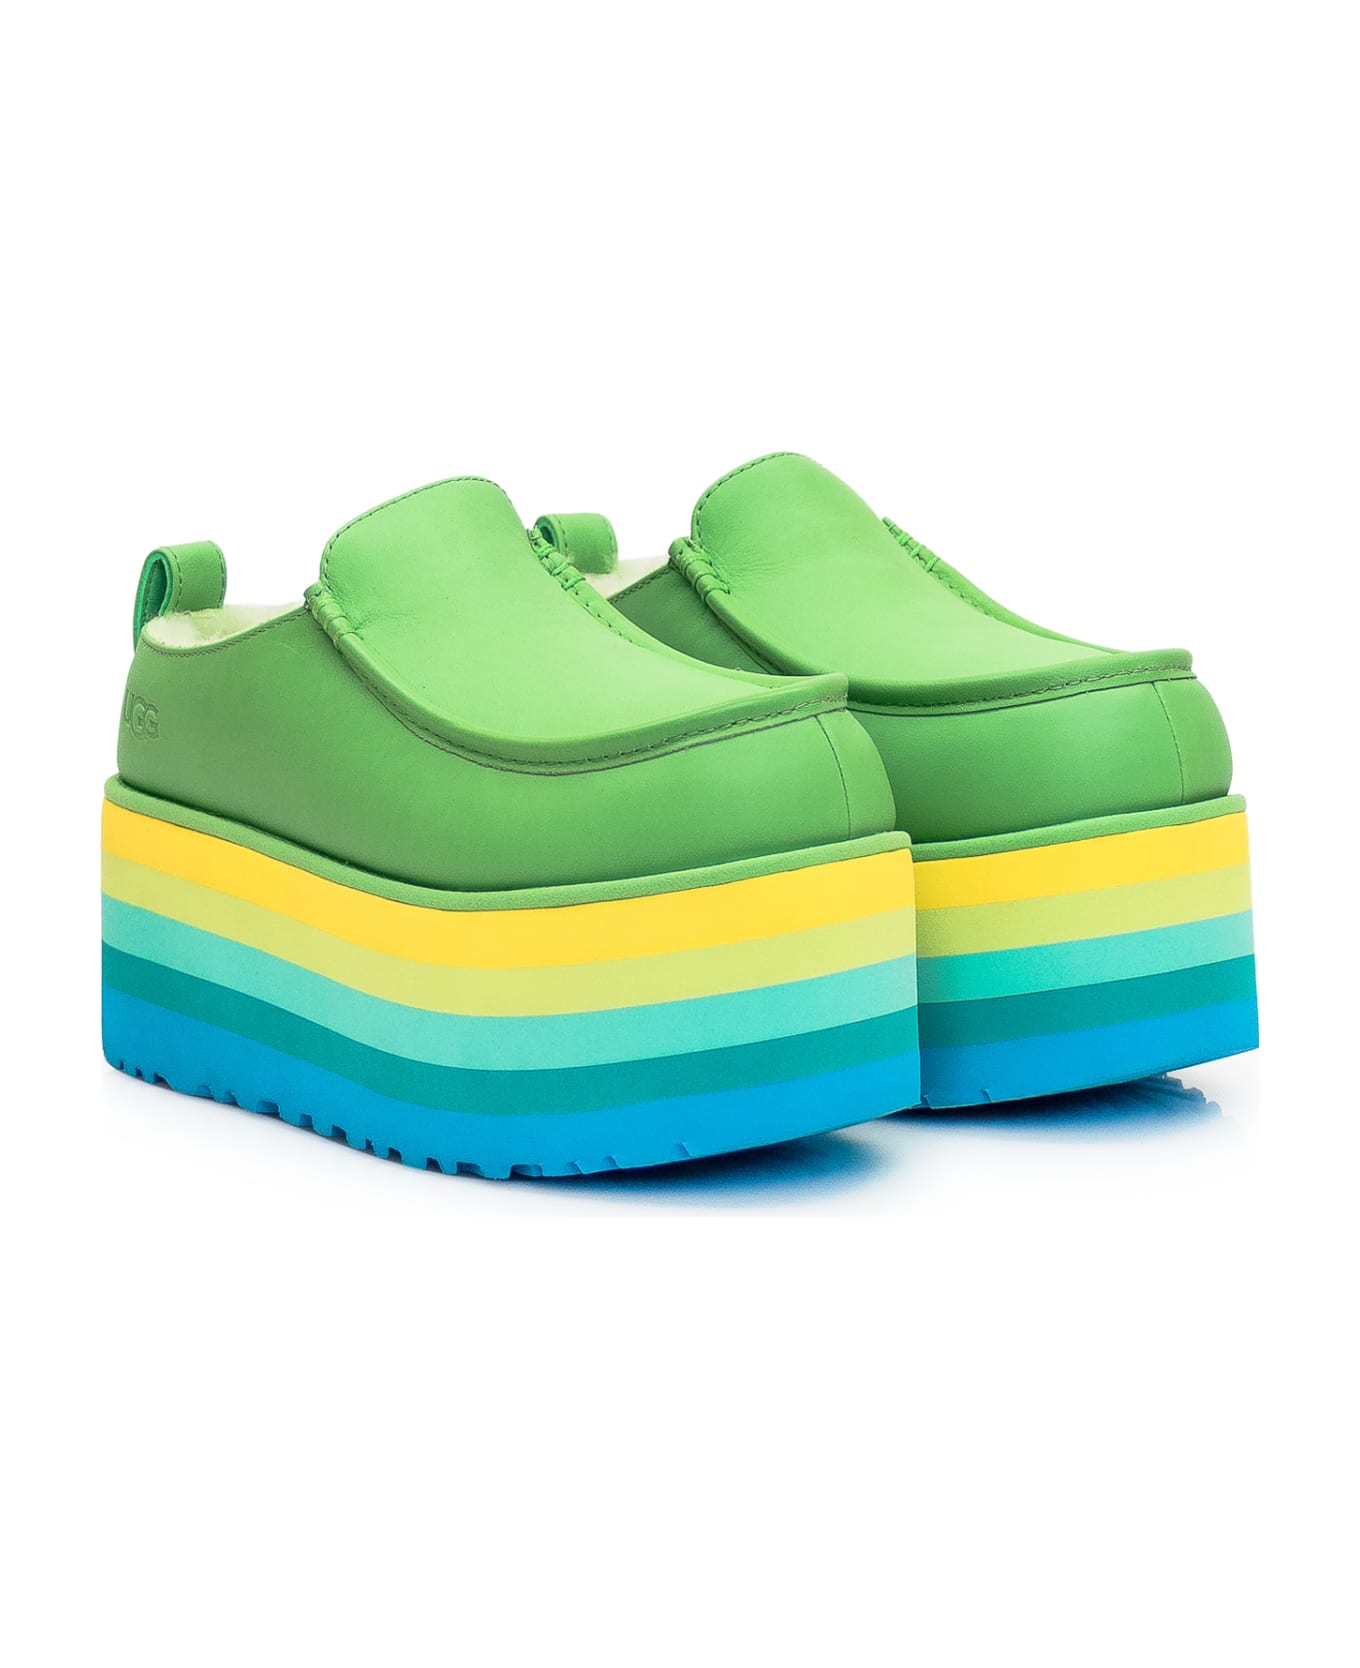 UGG Sandal With Platform - GREEN MULTI